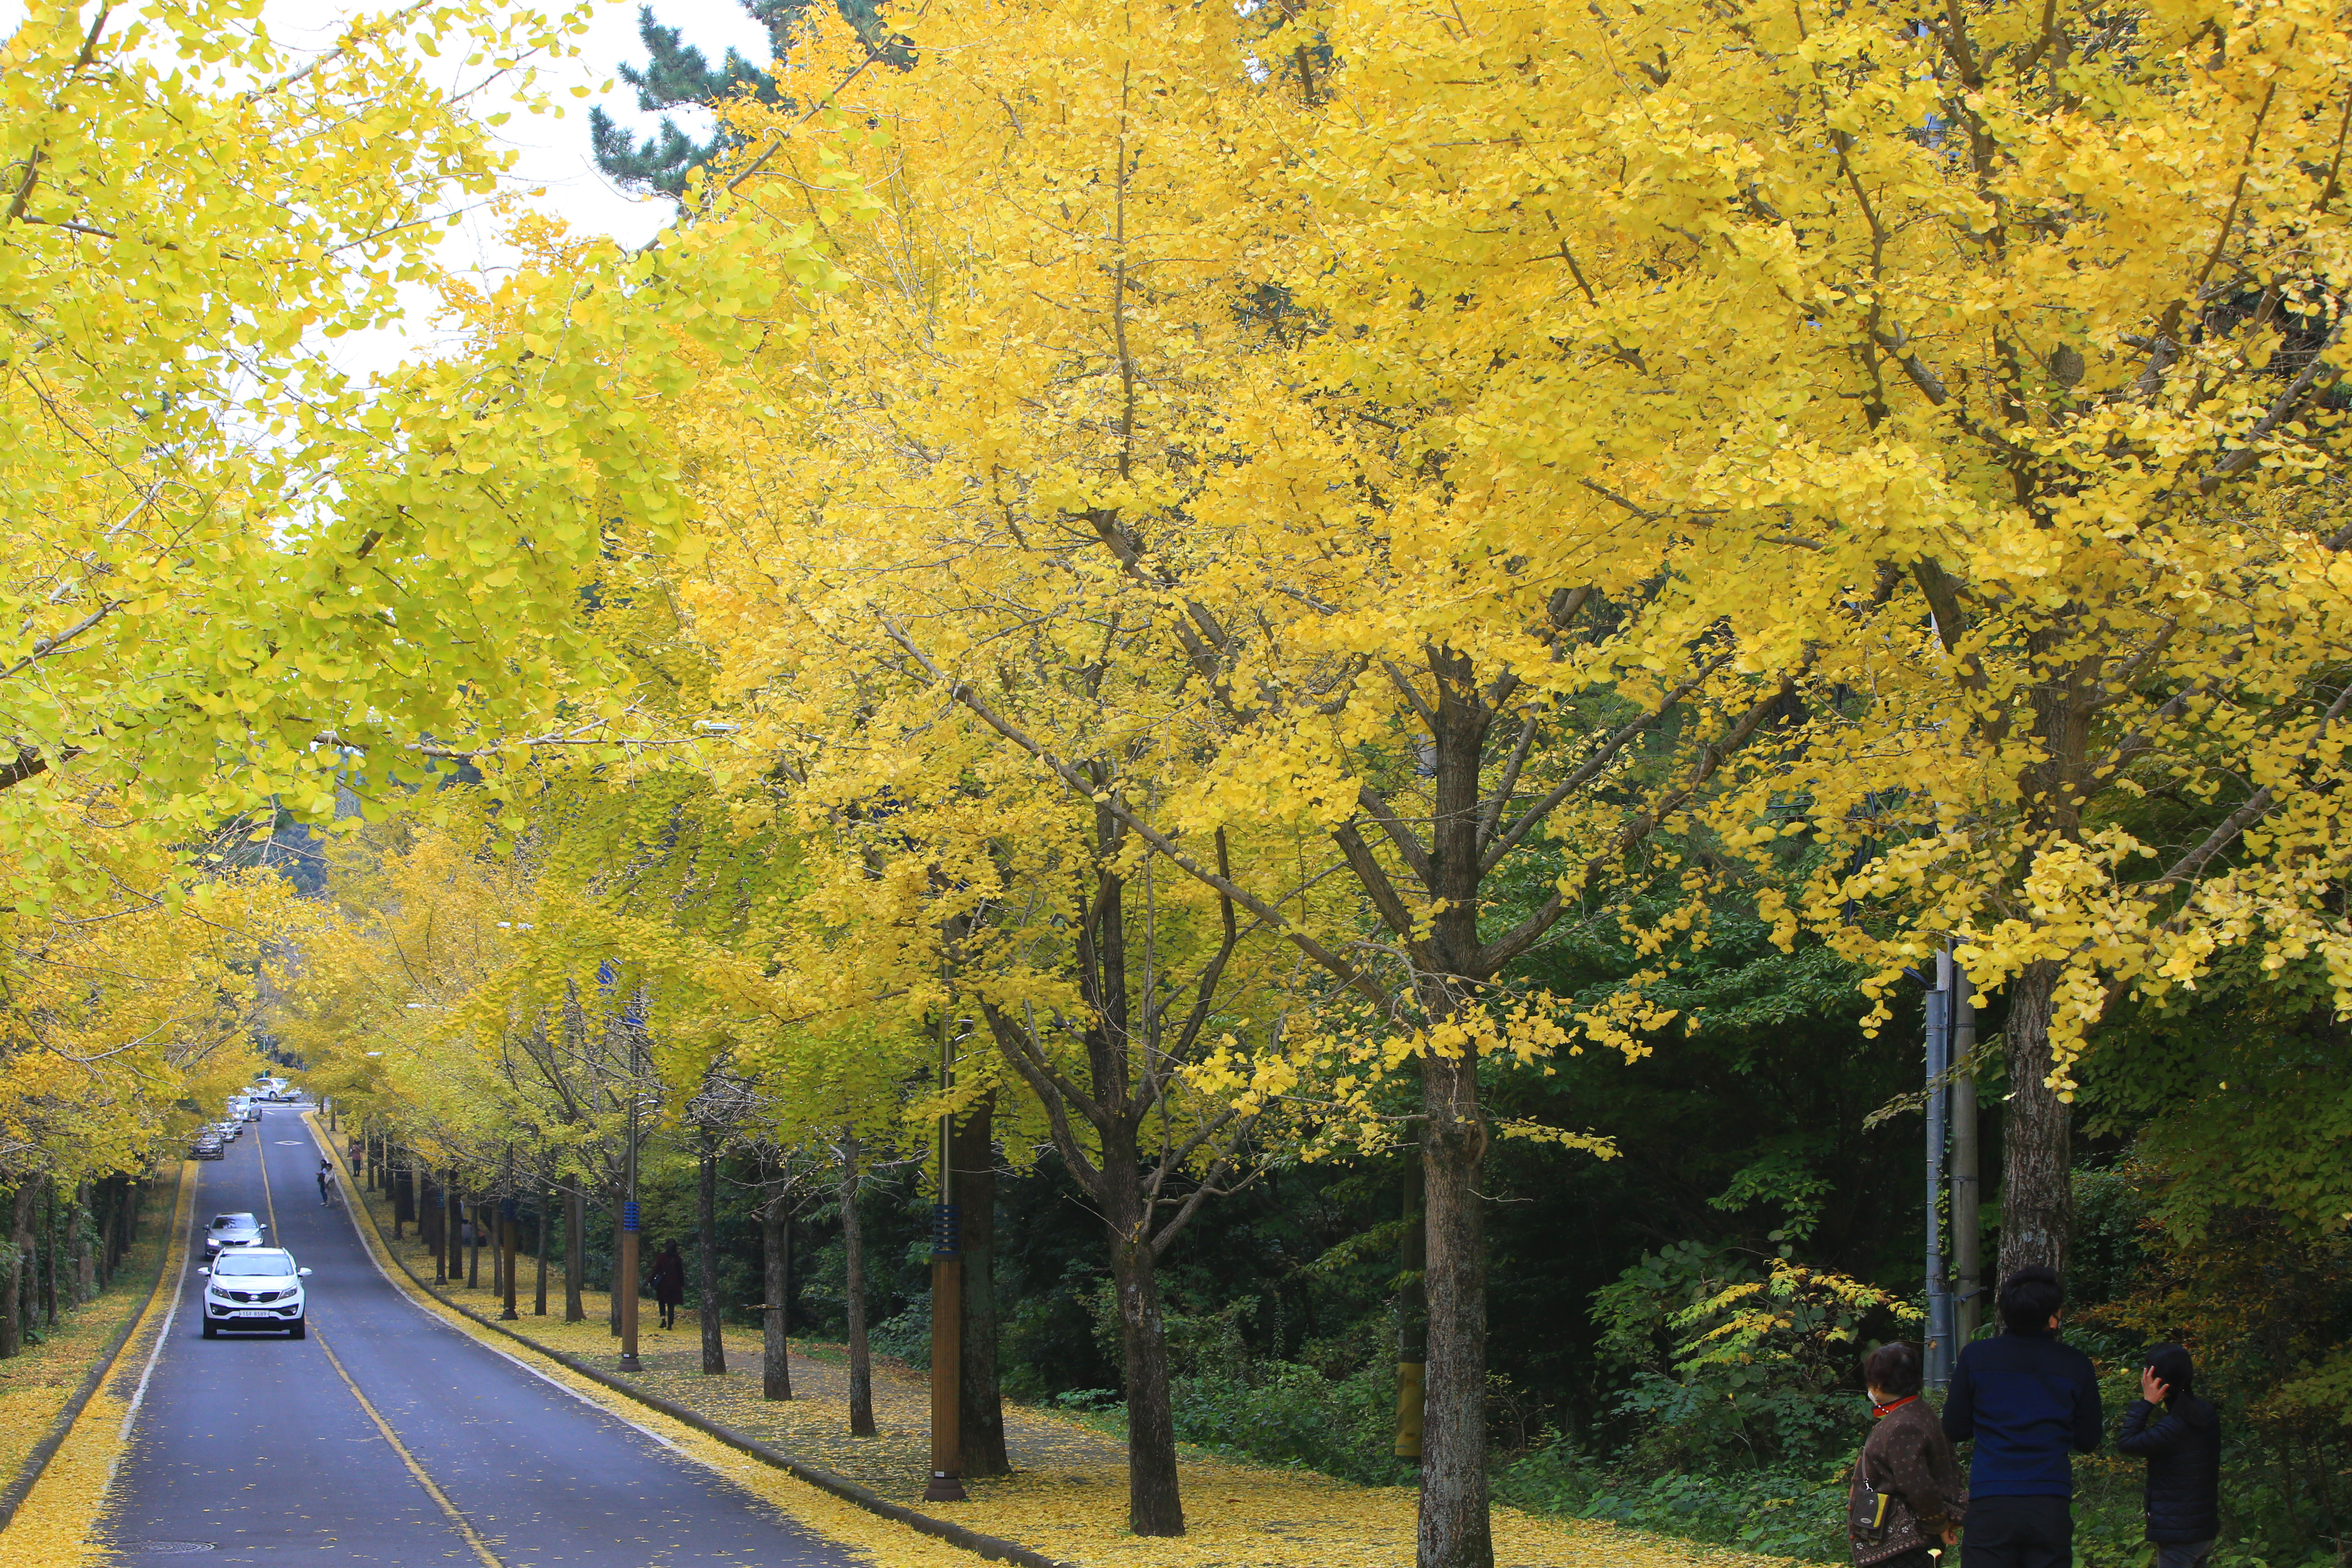 본격적인 가을철이 되면서 은행나무 낙과로 인한 민원이 각 지자체에 잇따르고 있다. 서울시에 따르면 2020년 기준 시내 가로수는 총 30만 5,086그루, 이 중 은행나무가 10만 6,205그루(약 35% 차지)로 가장 많다. (사진 출처=연합뉴스)